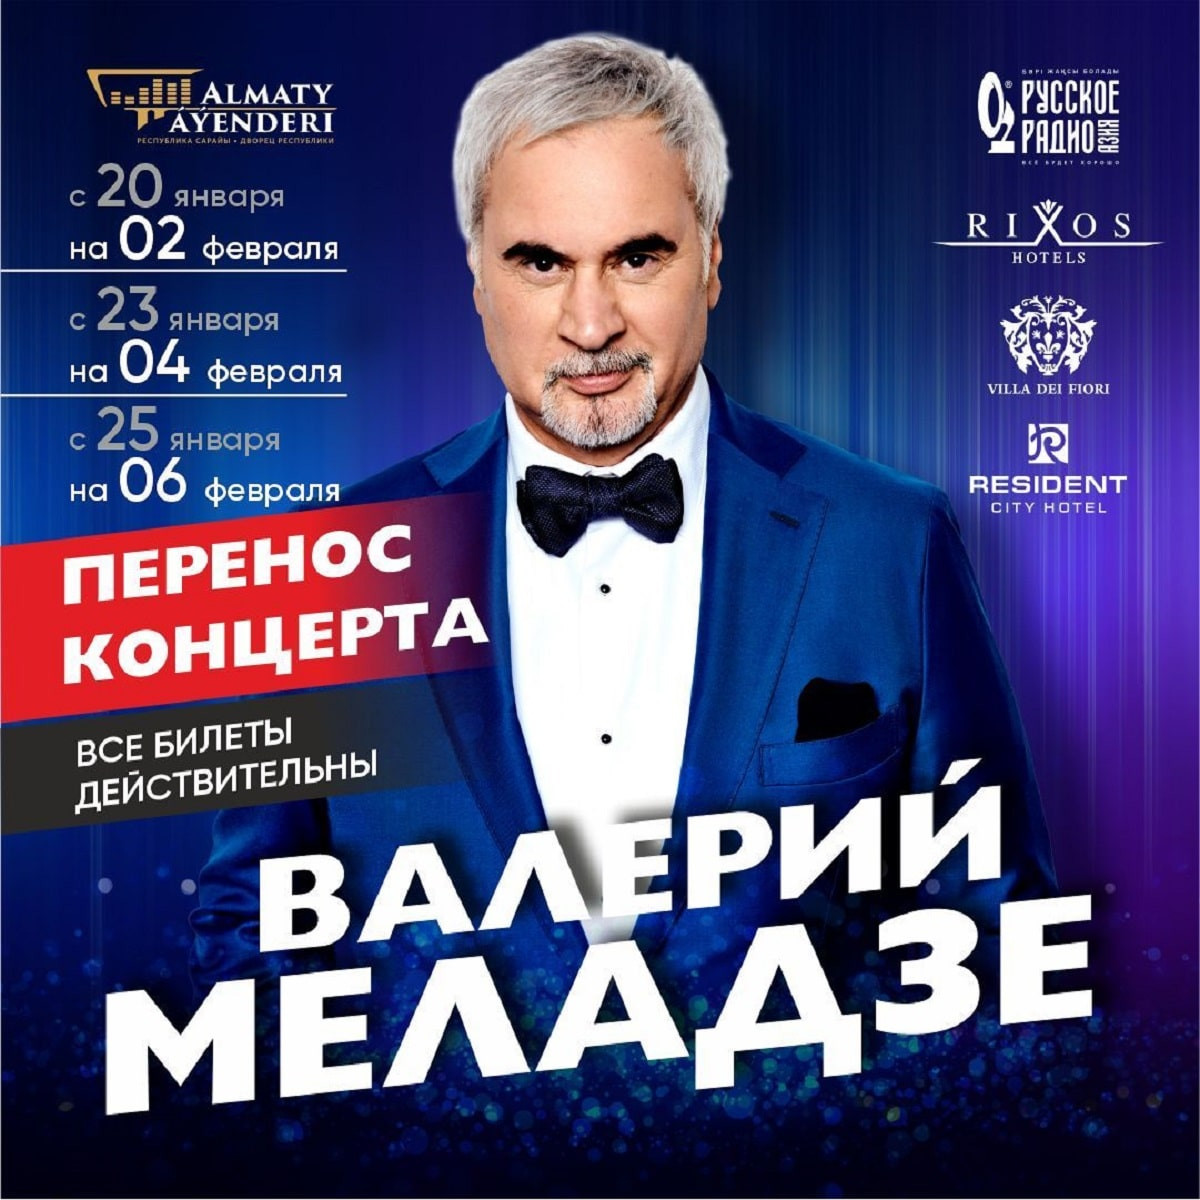 Валерий Меладзенің концерті өтпейтін болды